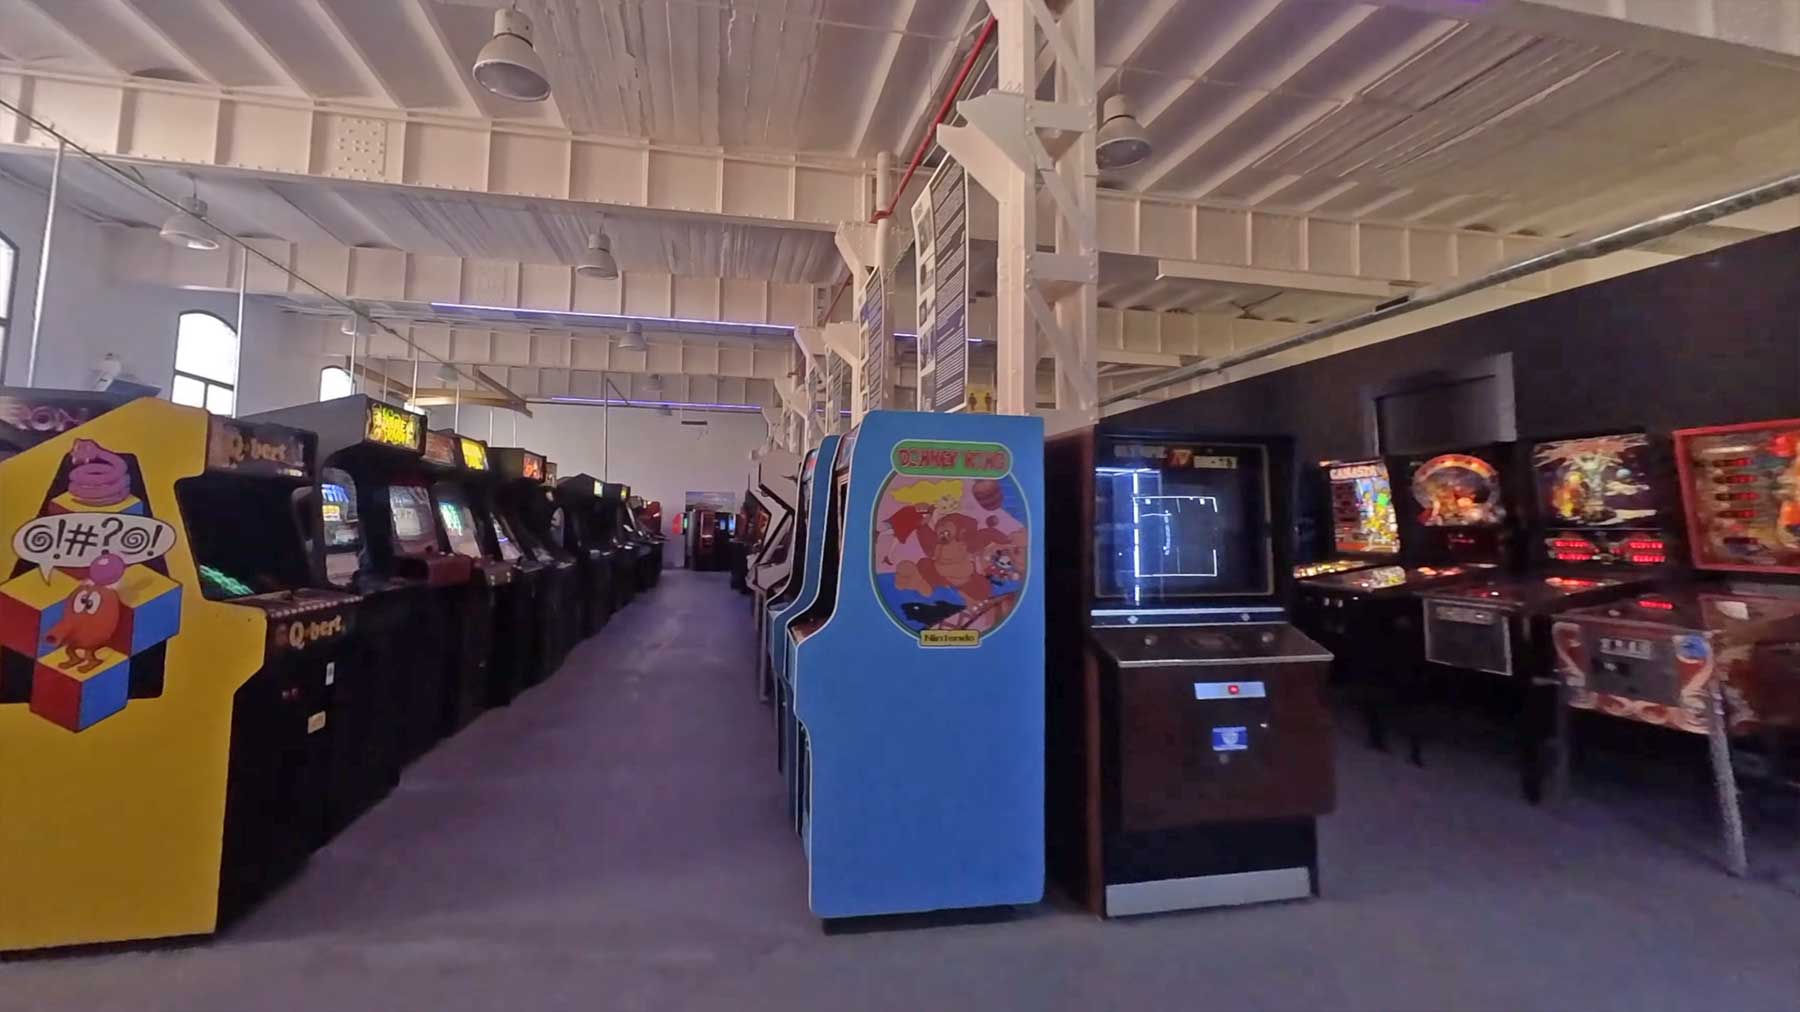 Kameradrohnenflug durch ein Arcade-Spieleautomaten-Museum Arcade-museum-drohnenflug-rundflug 